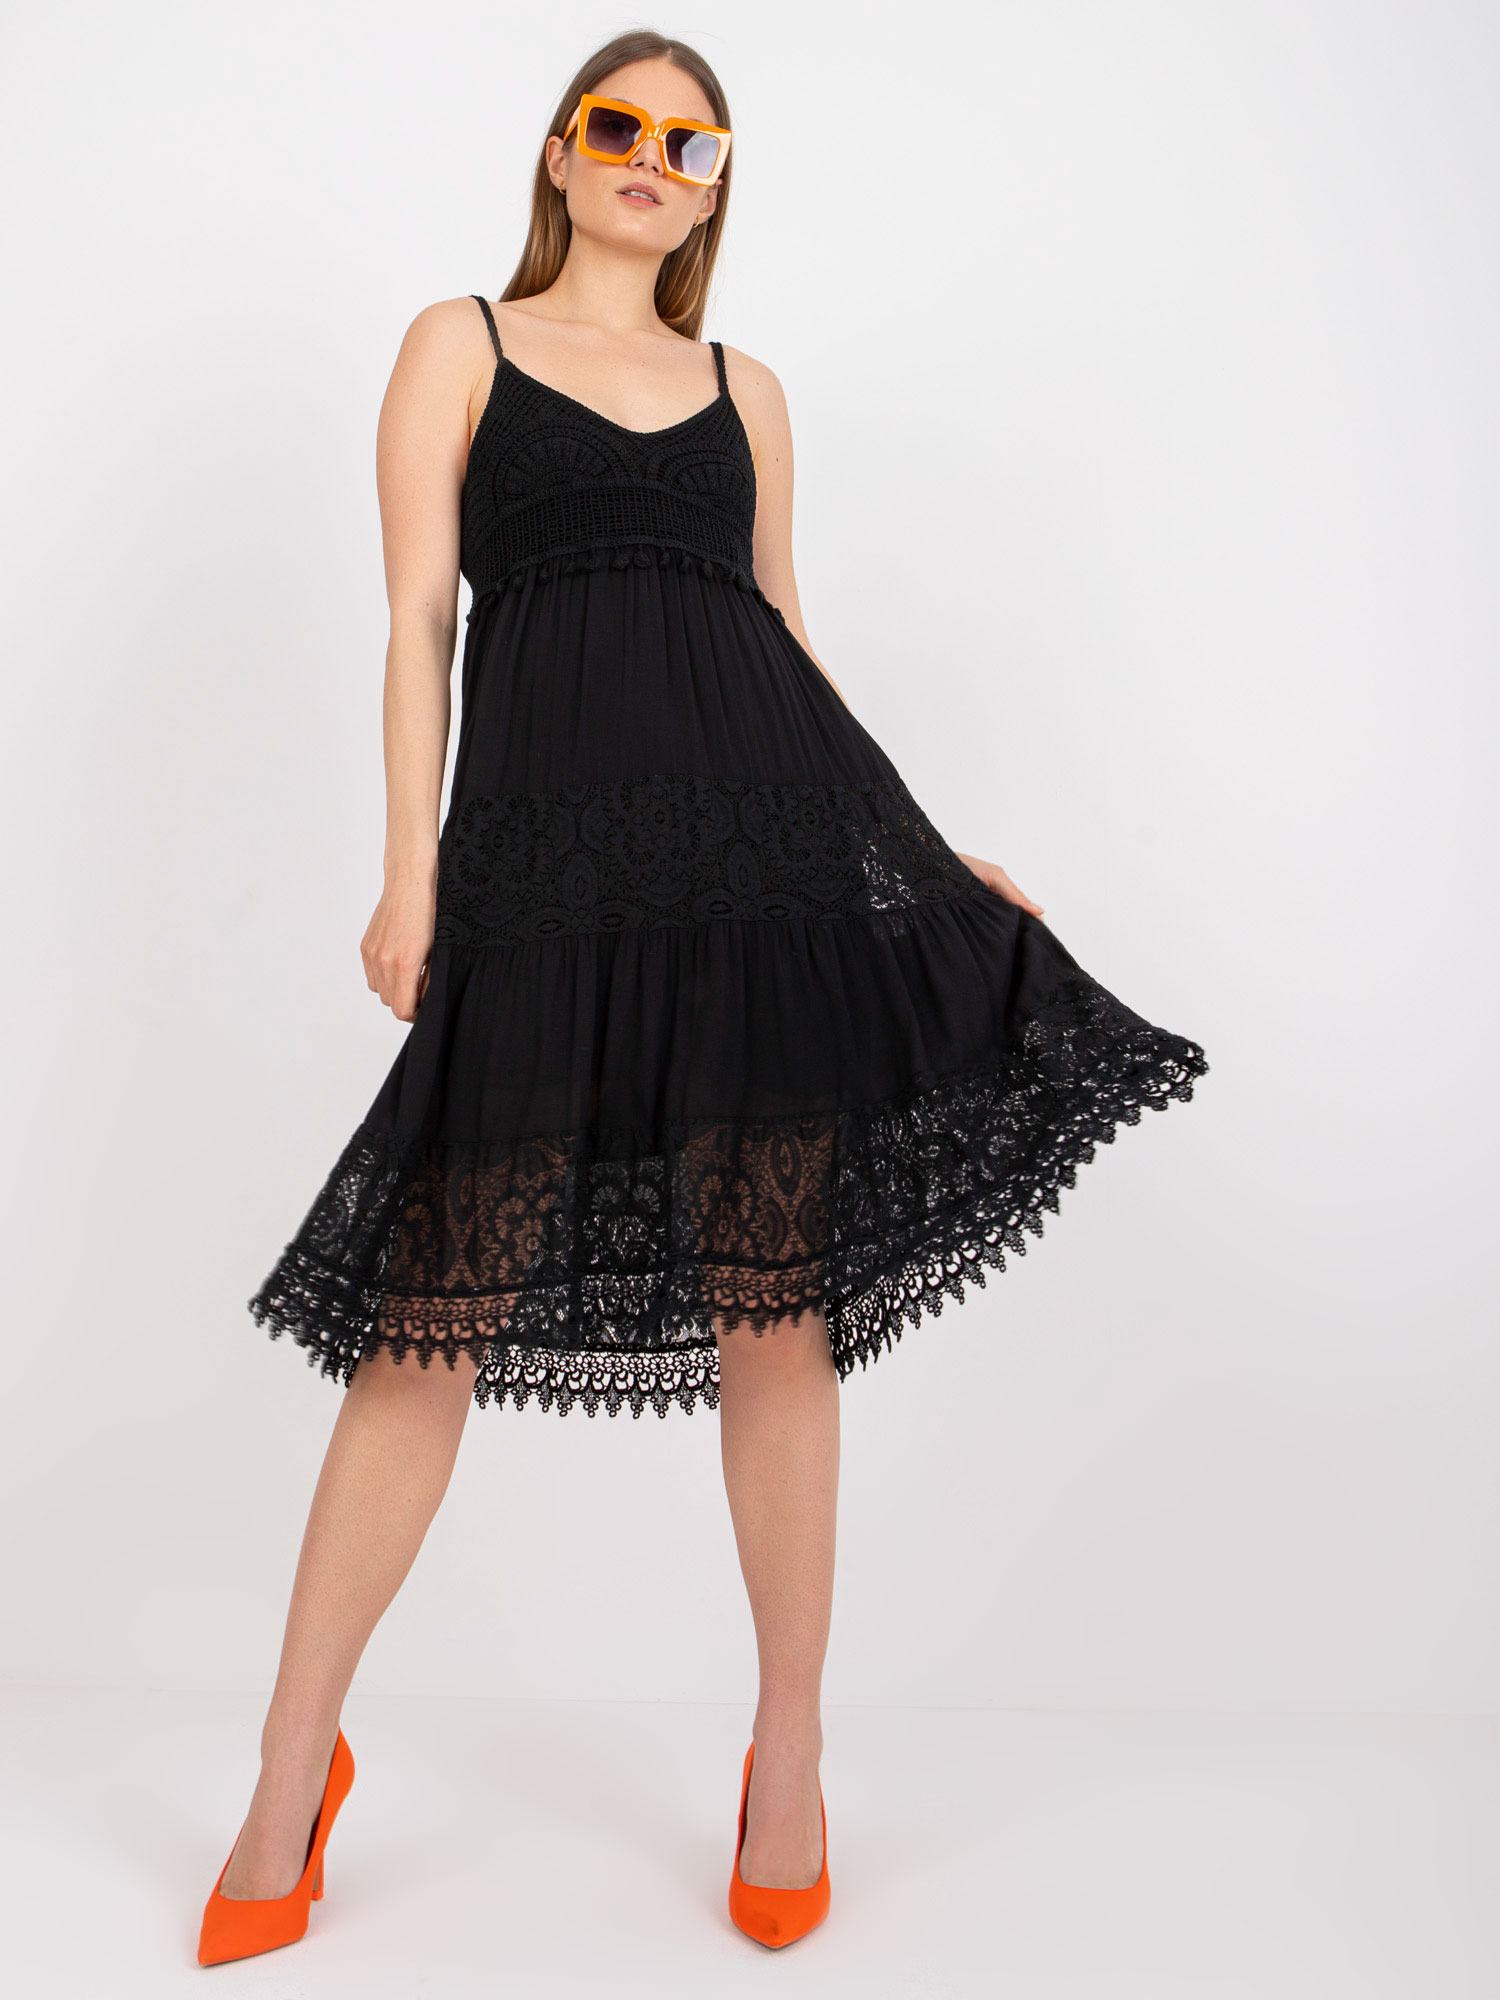 Black flowing dress on hangers with lace OCH BELLA